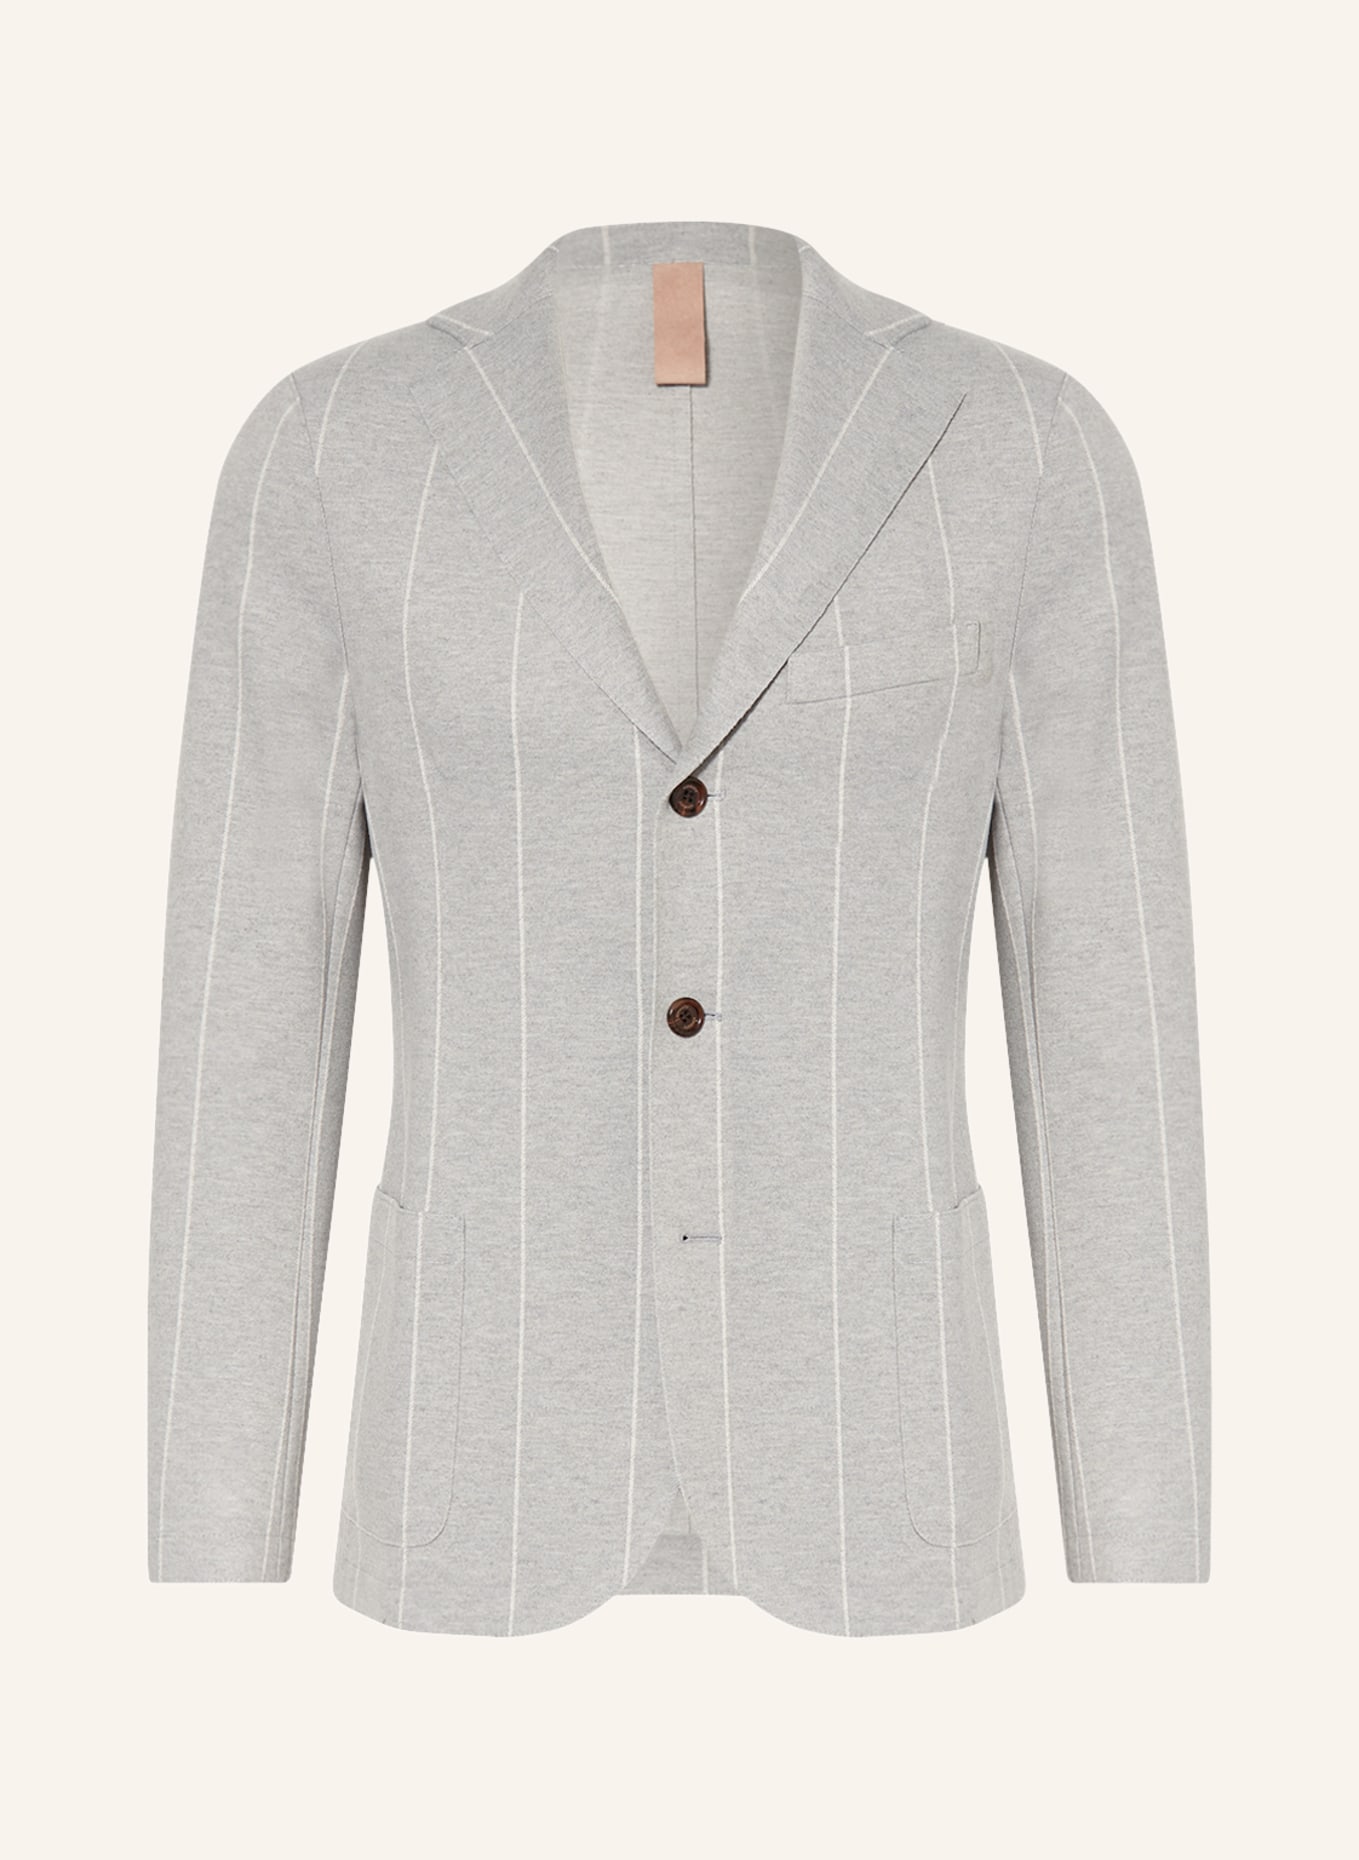 eleventy Suit jacket extra slim fit, Color: 13 LIGHT GREY (Image 1)